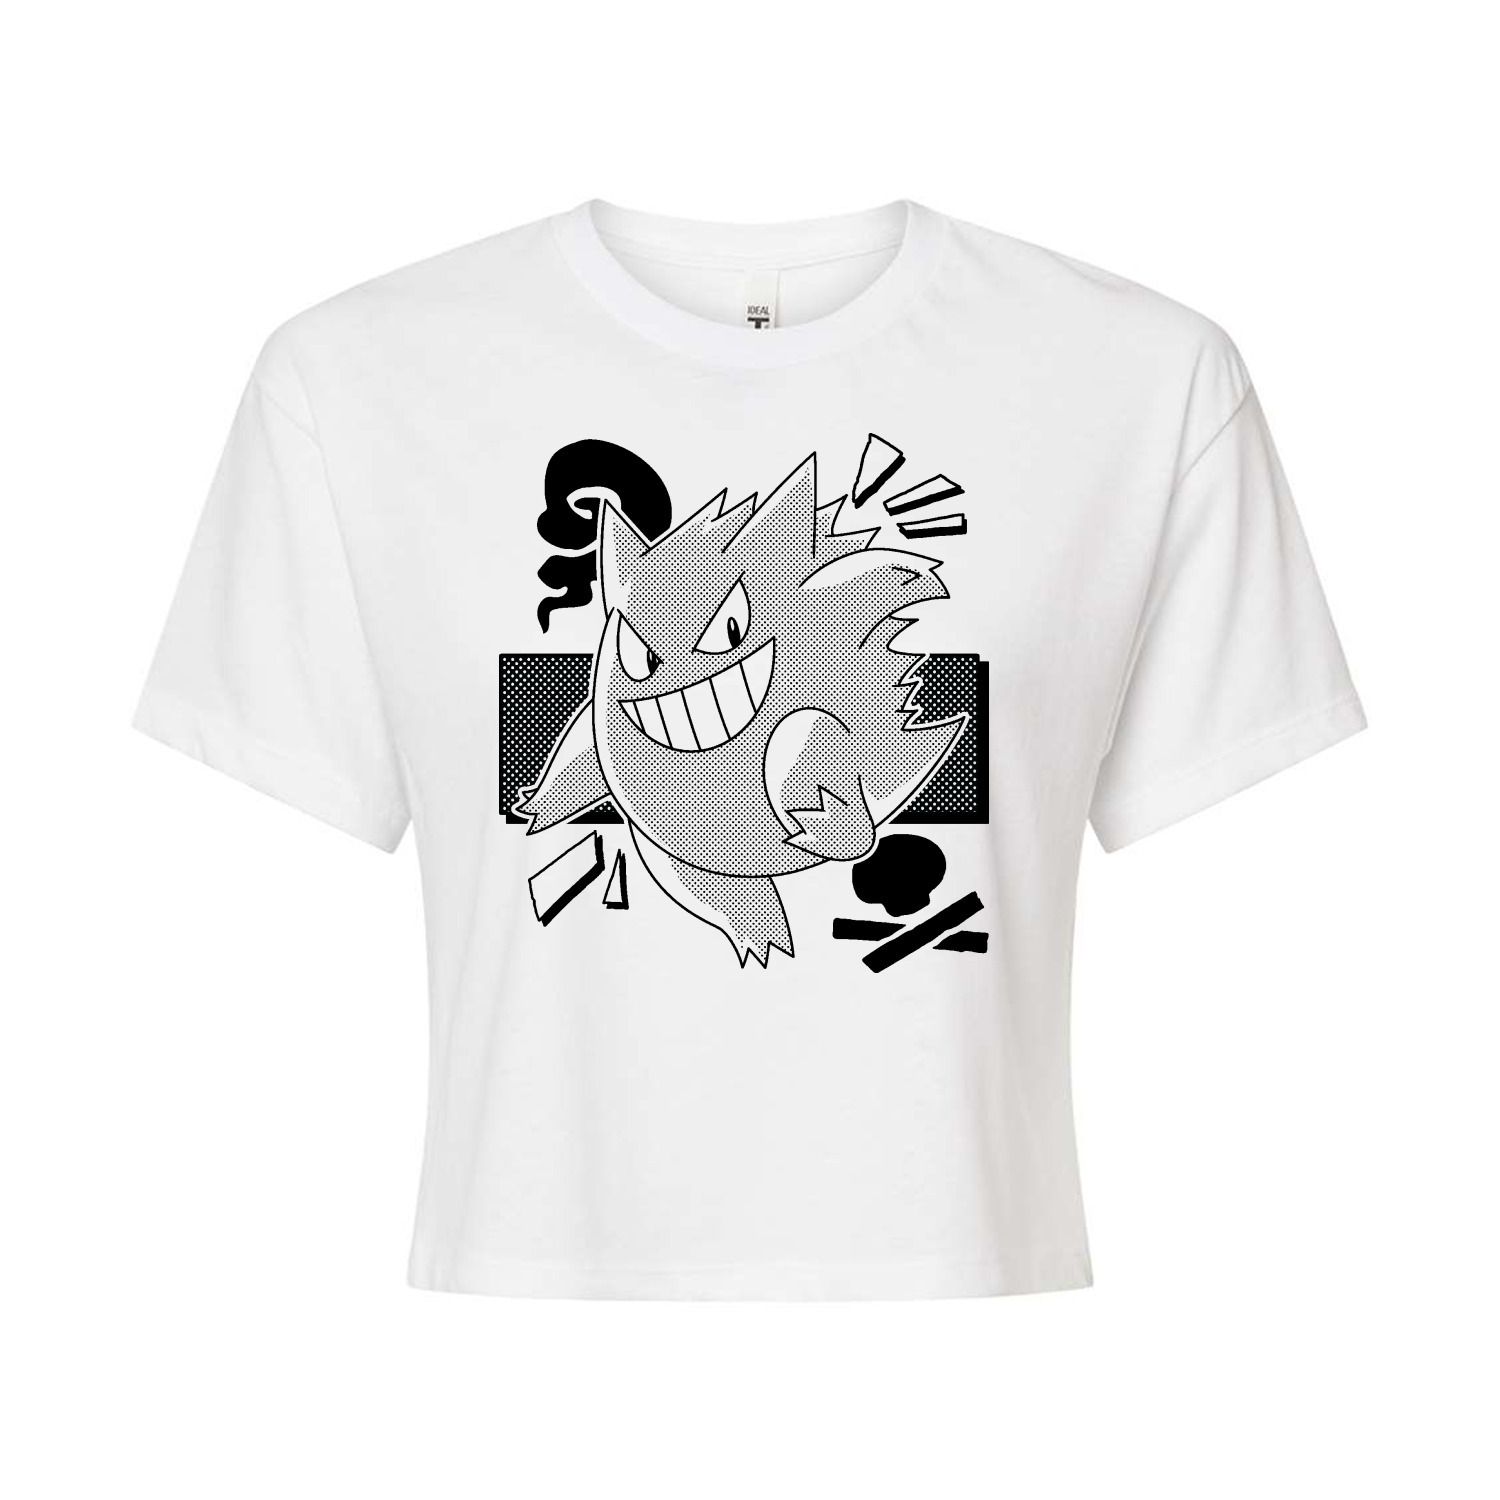 Укороченная футболка с рисунком Pokémon Gengar для юниоров Licensed Character